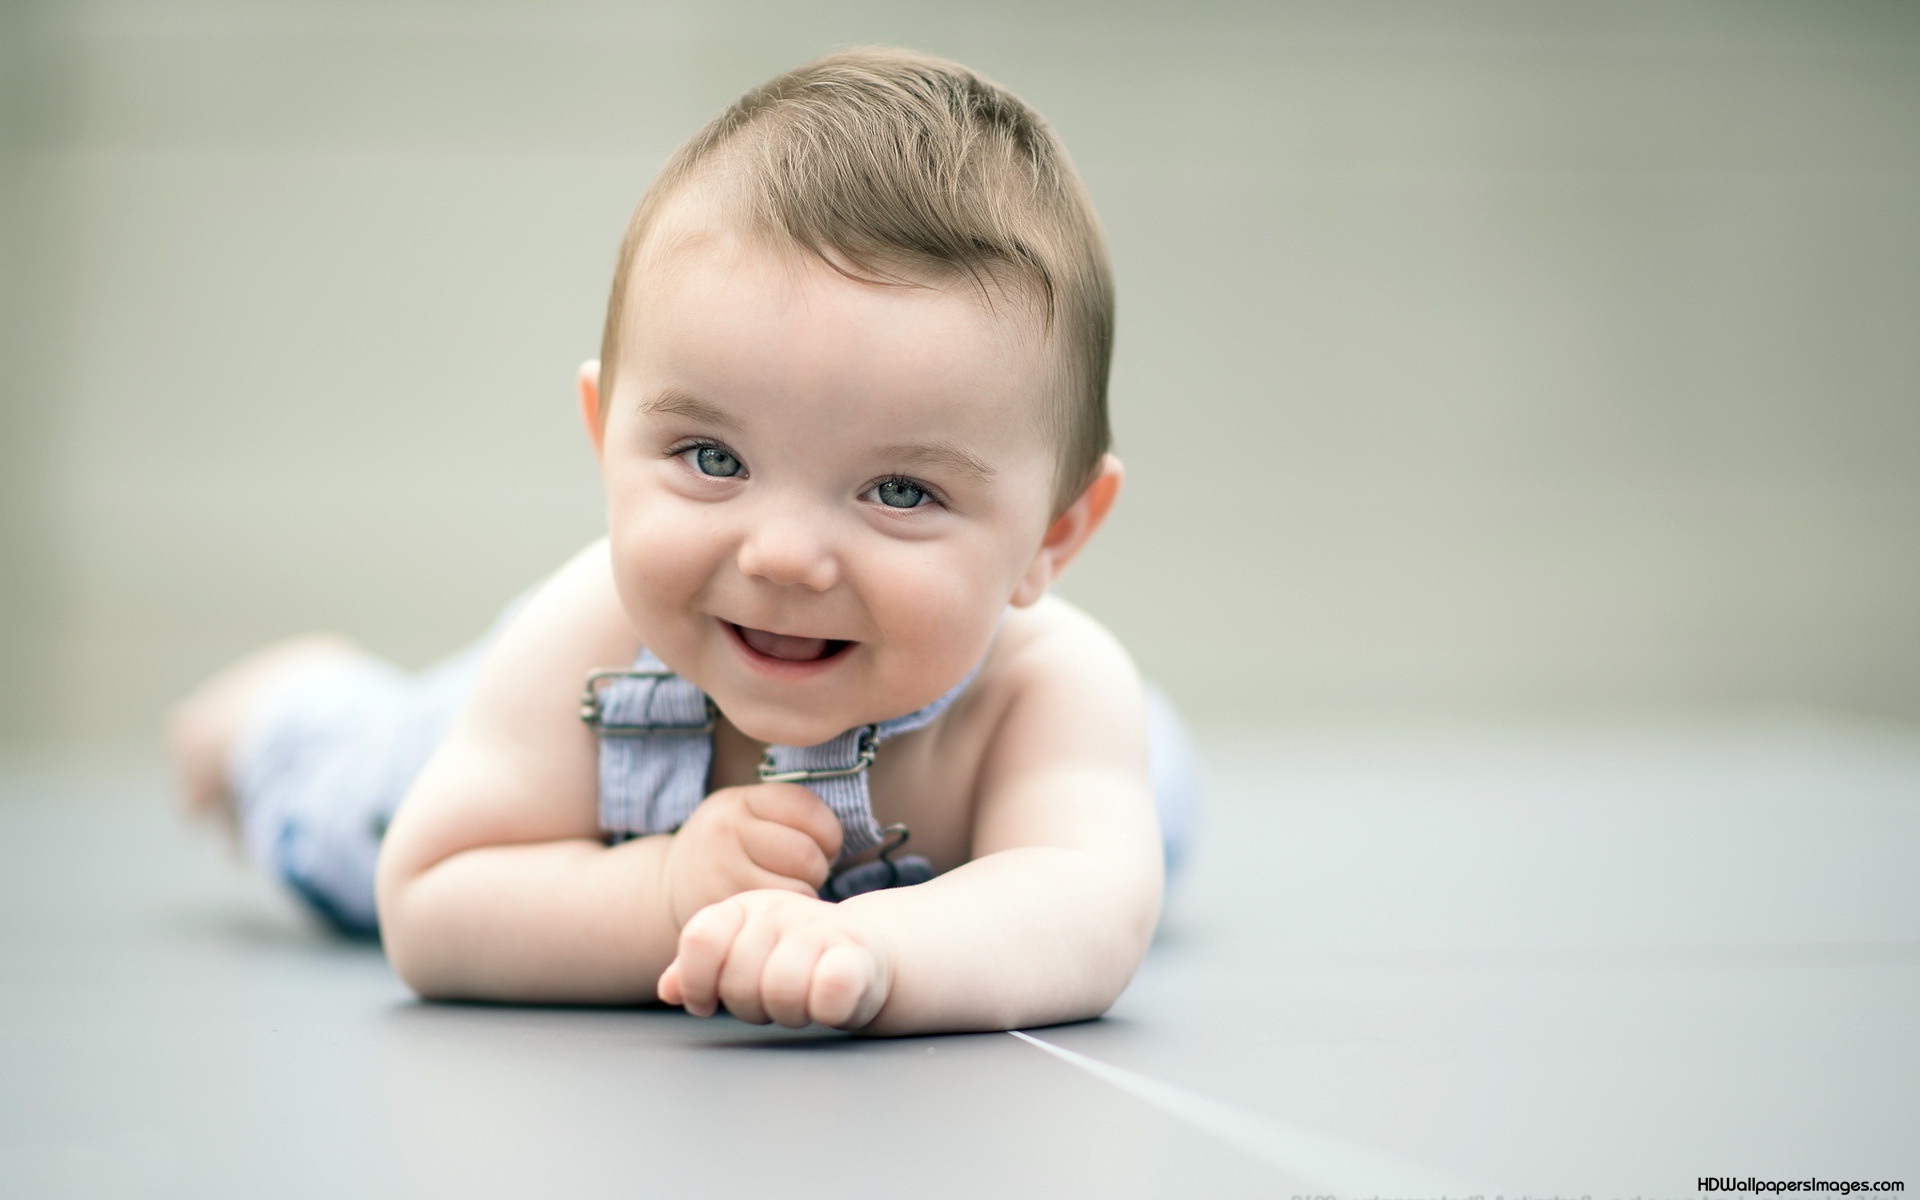 baby picture cute - HD Desktop Wallpapers | 4k HD